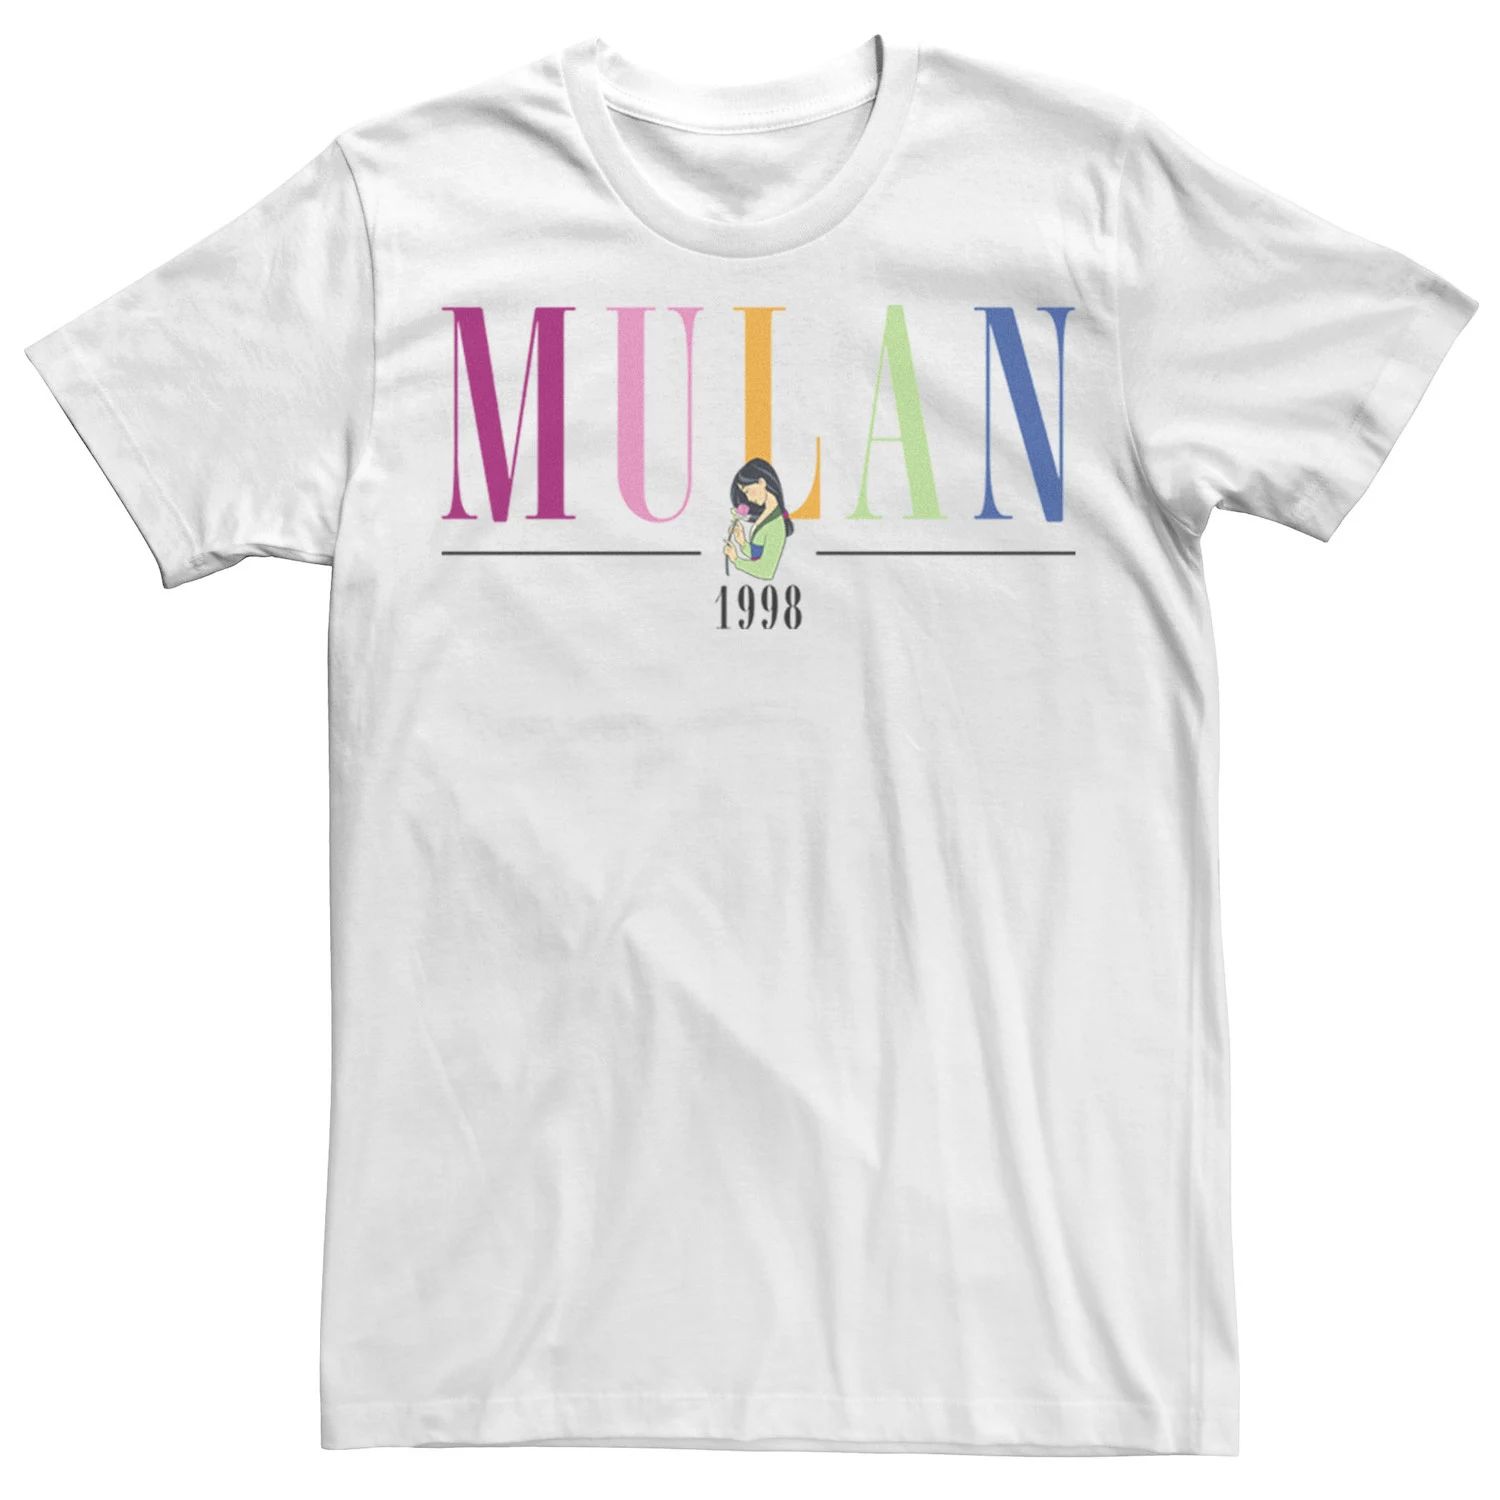 Мужская футболка Disney Mulan & Mushu 1998 с надписью в стиле поп-музыки Licensed Character фотографии